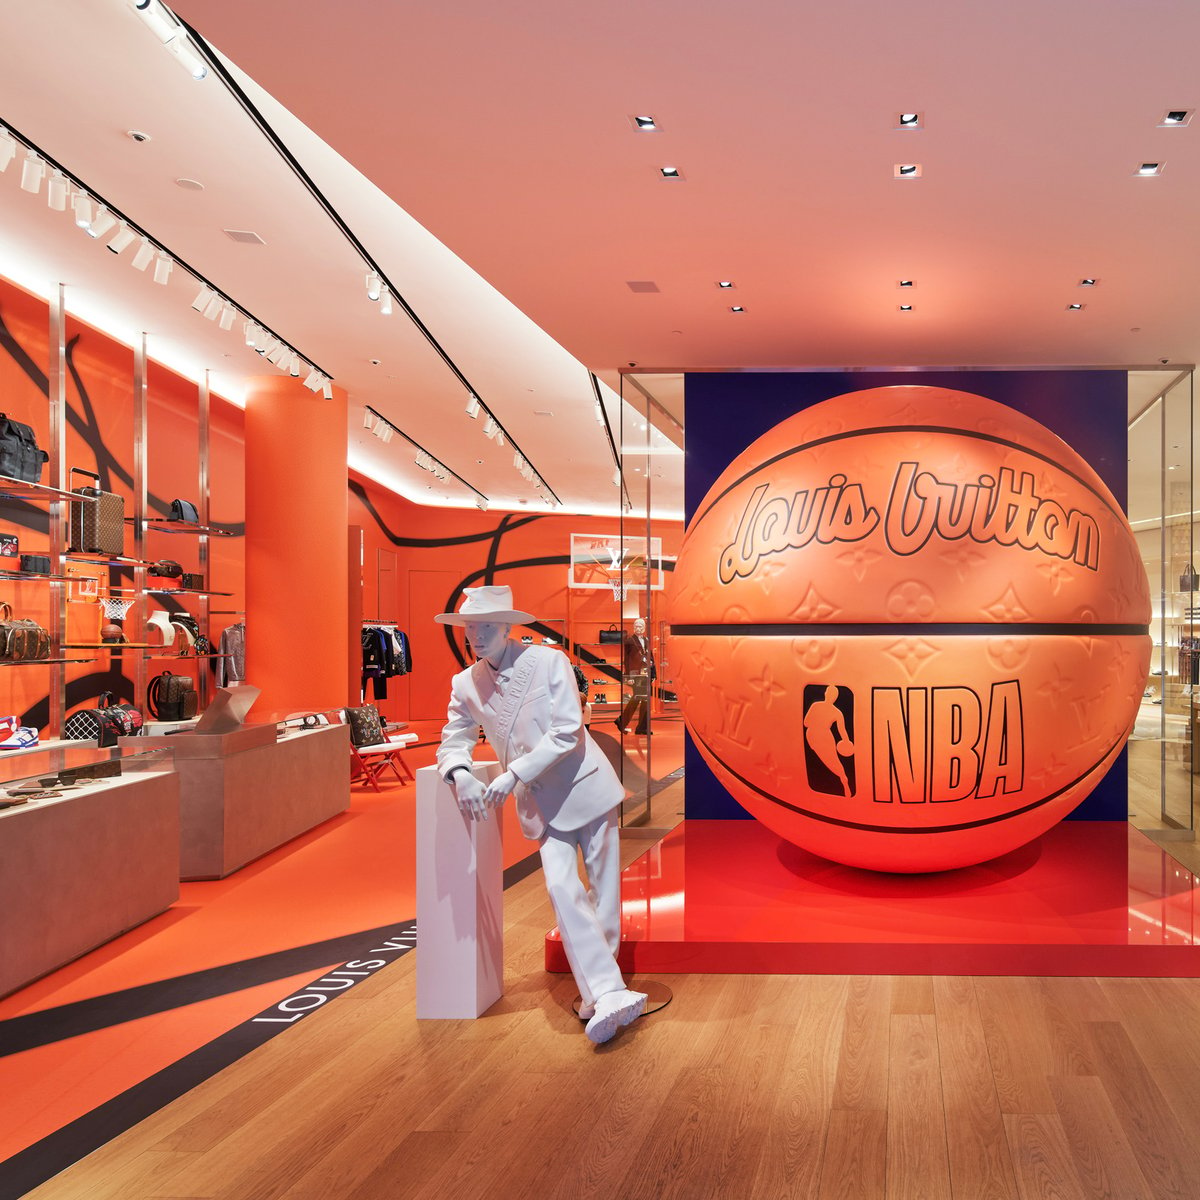 ルイ・ヴィトン 渋谷メンズ店に特大バスケットボールが登場、NBAコラボ 